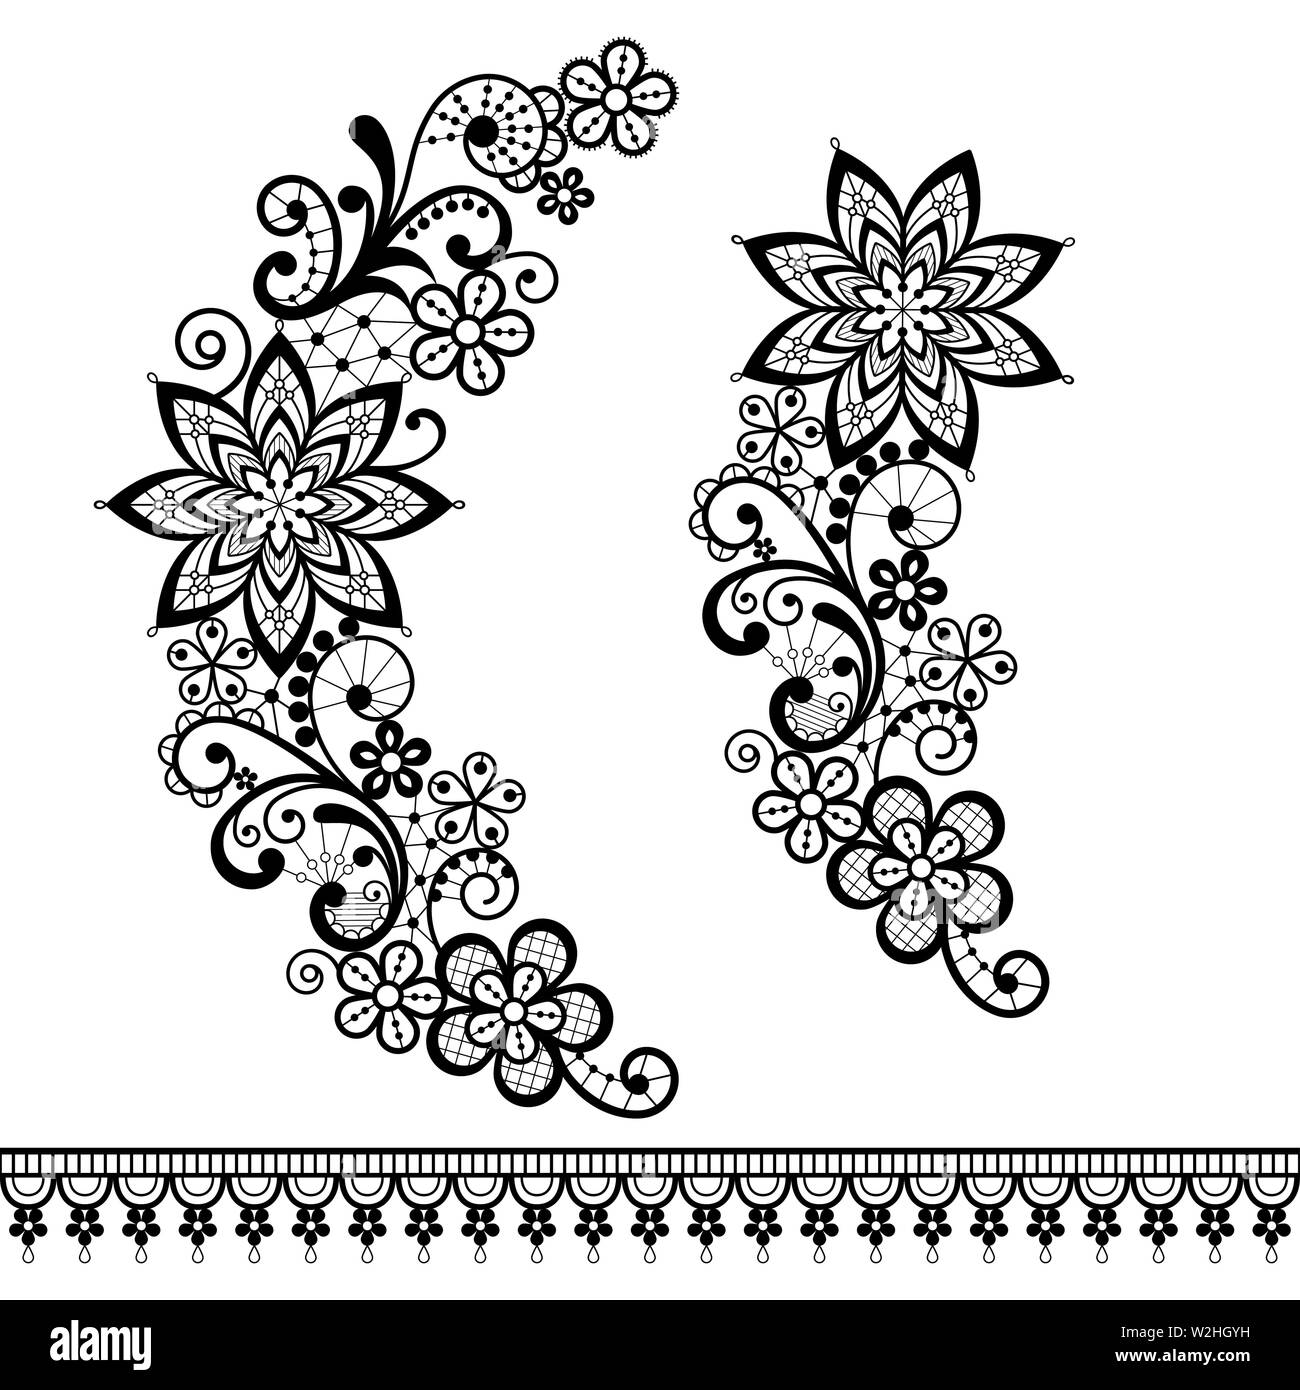 Retro Blumenmuster Spitze Hälfte Kranz Vektor pattern - Monochrom dekorative Spitze Design Collection, Retro durchbrochene Hintergrund Stock Vektor